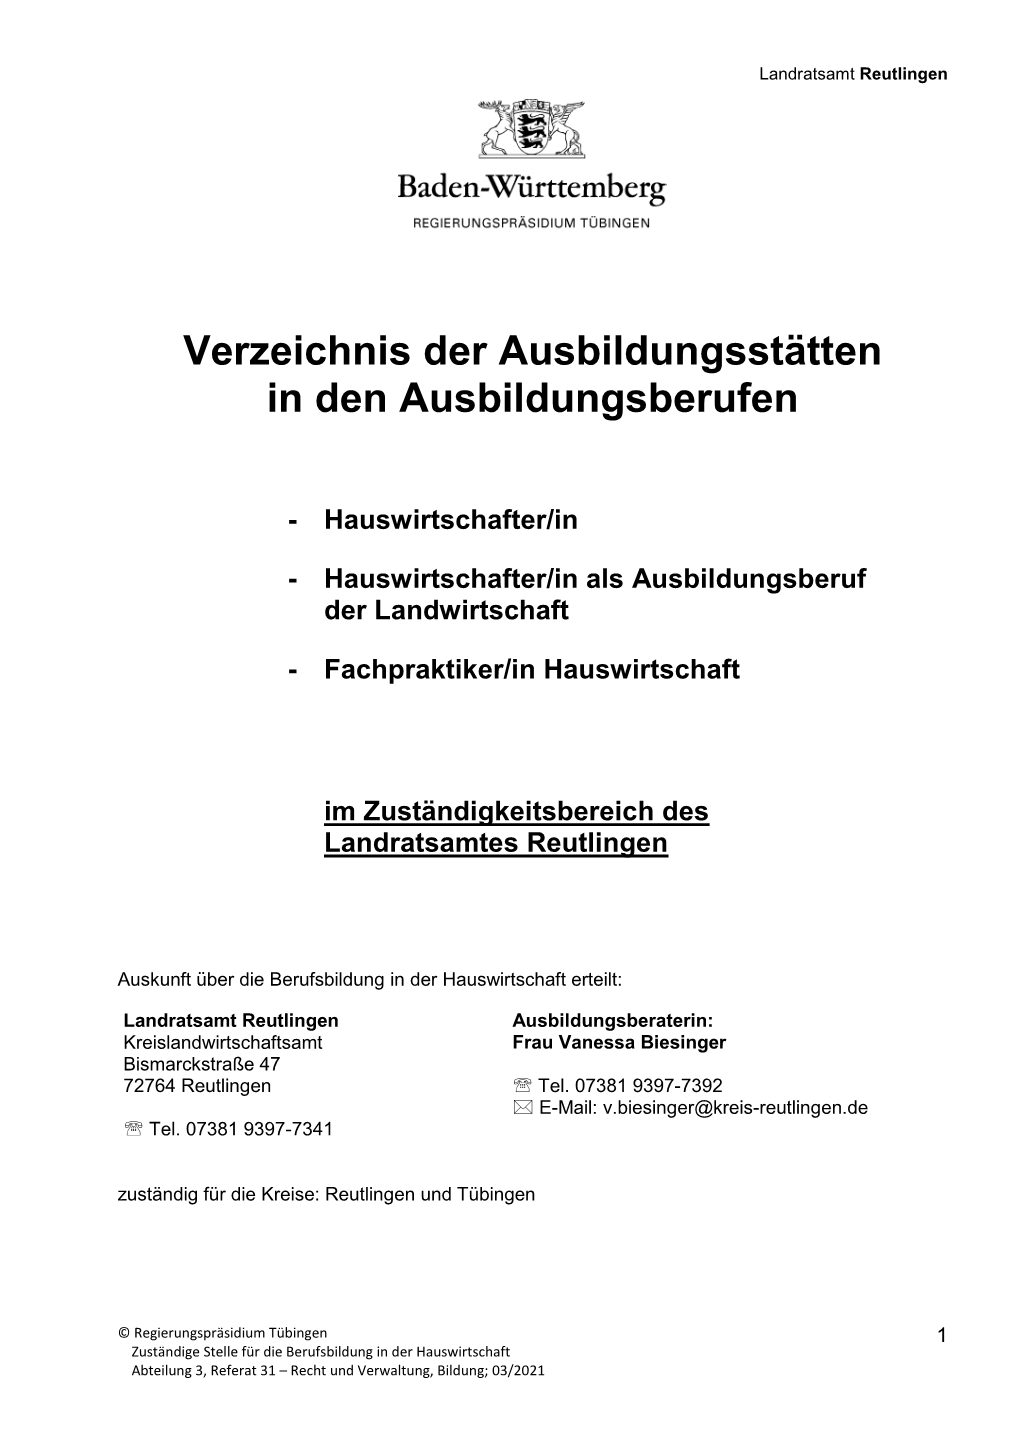 Landratsamt Reutlingen 03-2021